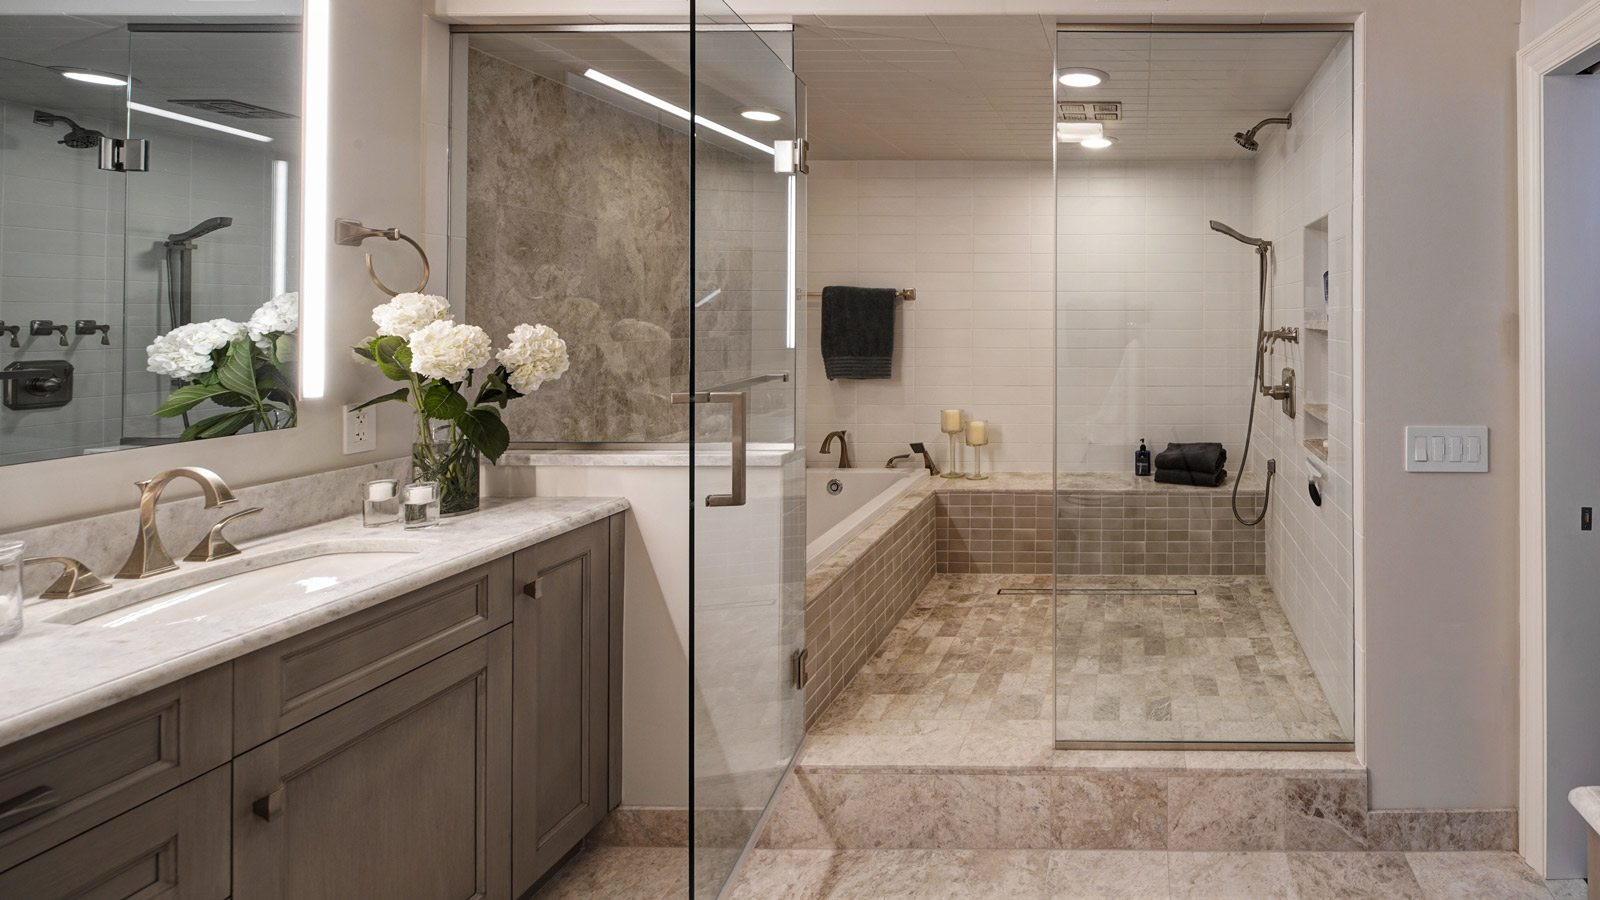 Master Bathroom Layouts
 Chicago Condo Master Bath Renovation Drury Design